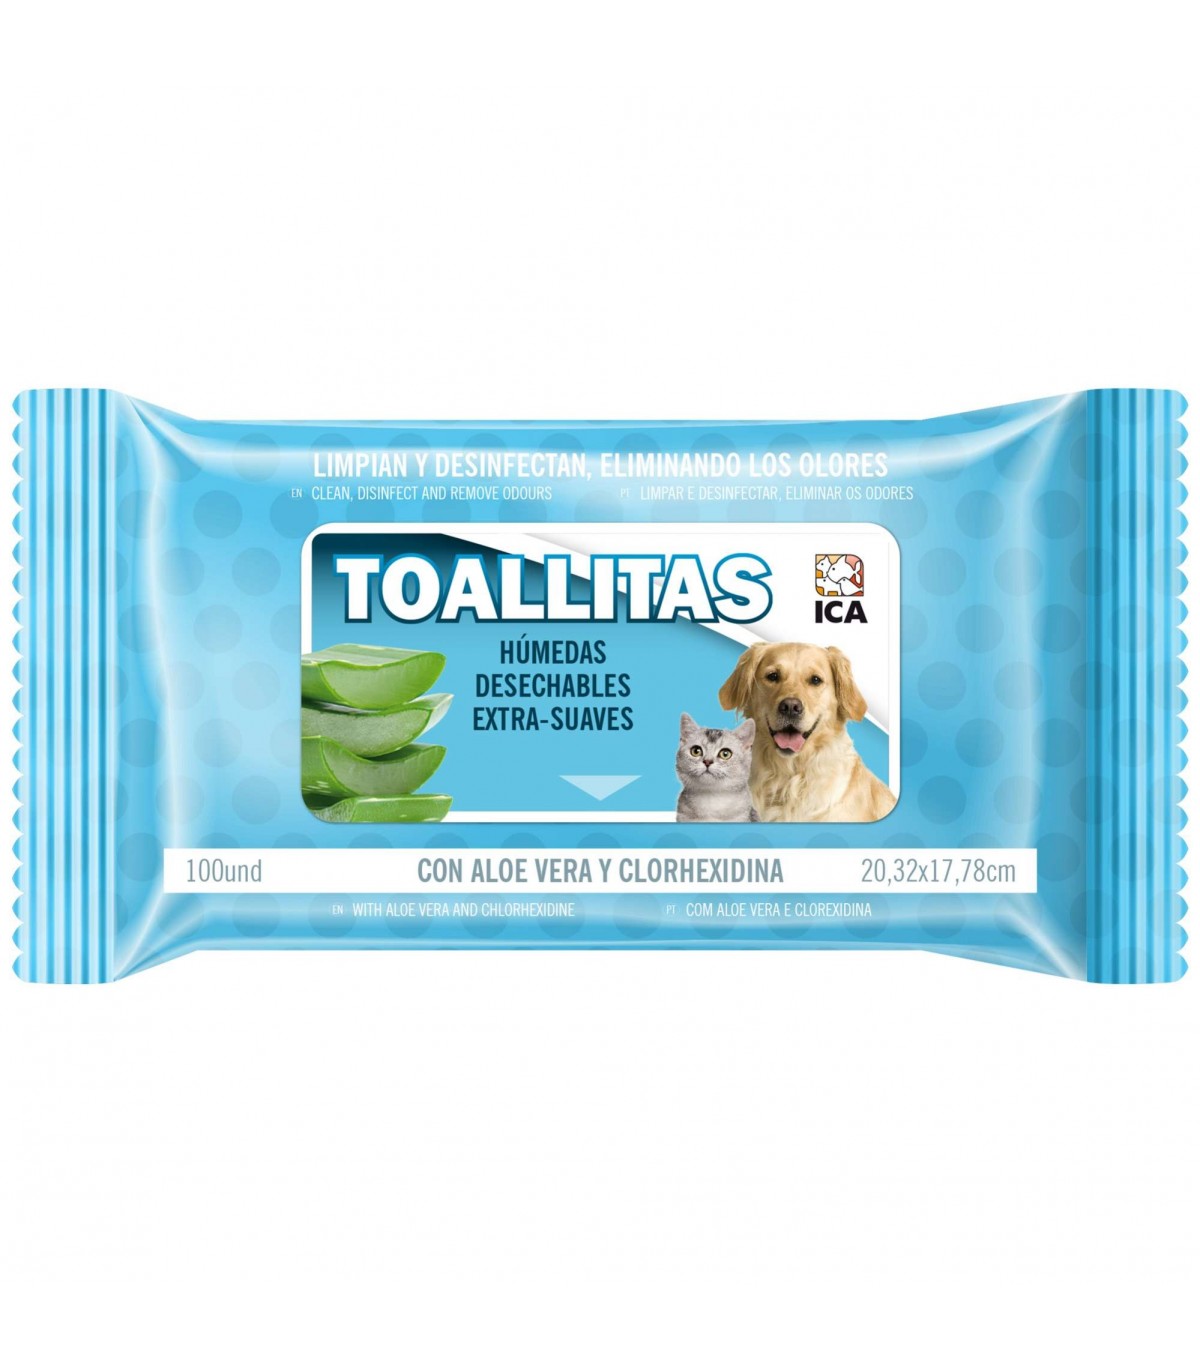 OTICAN + TOALLITAS LYS 40 UNIDADES (PACK) Higiene de Perros y Gatos